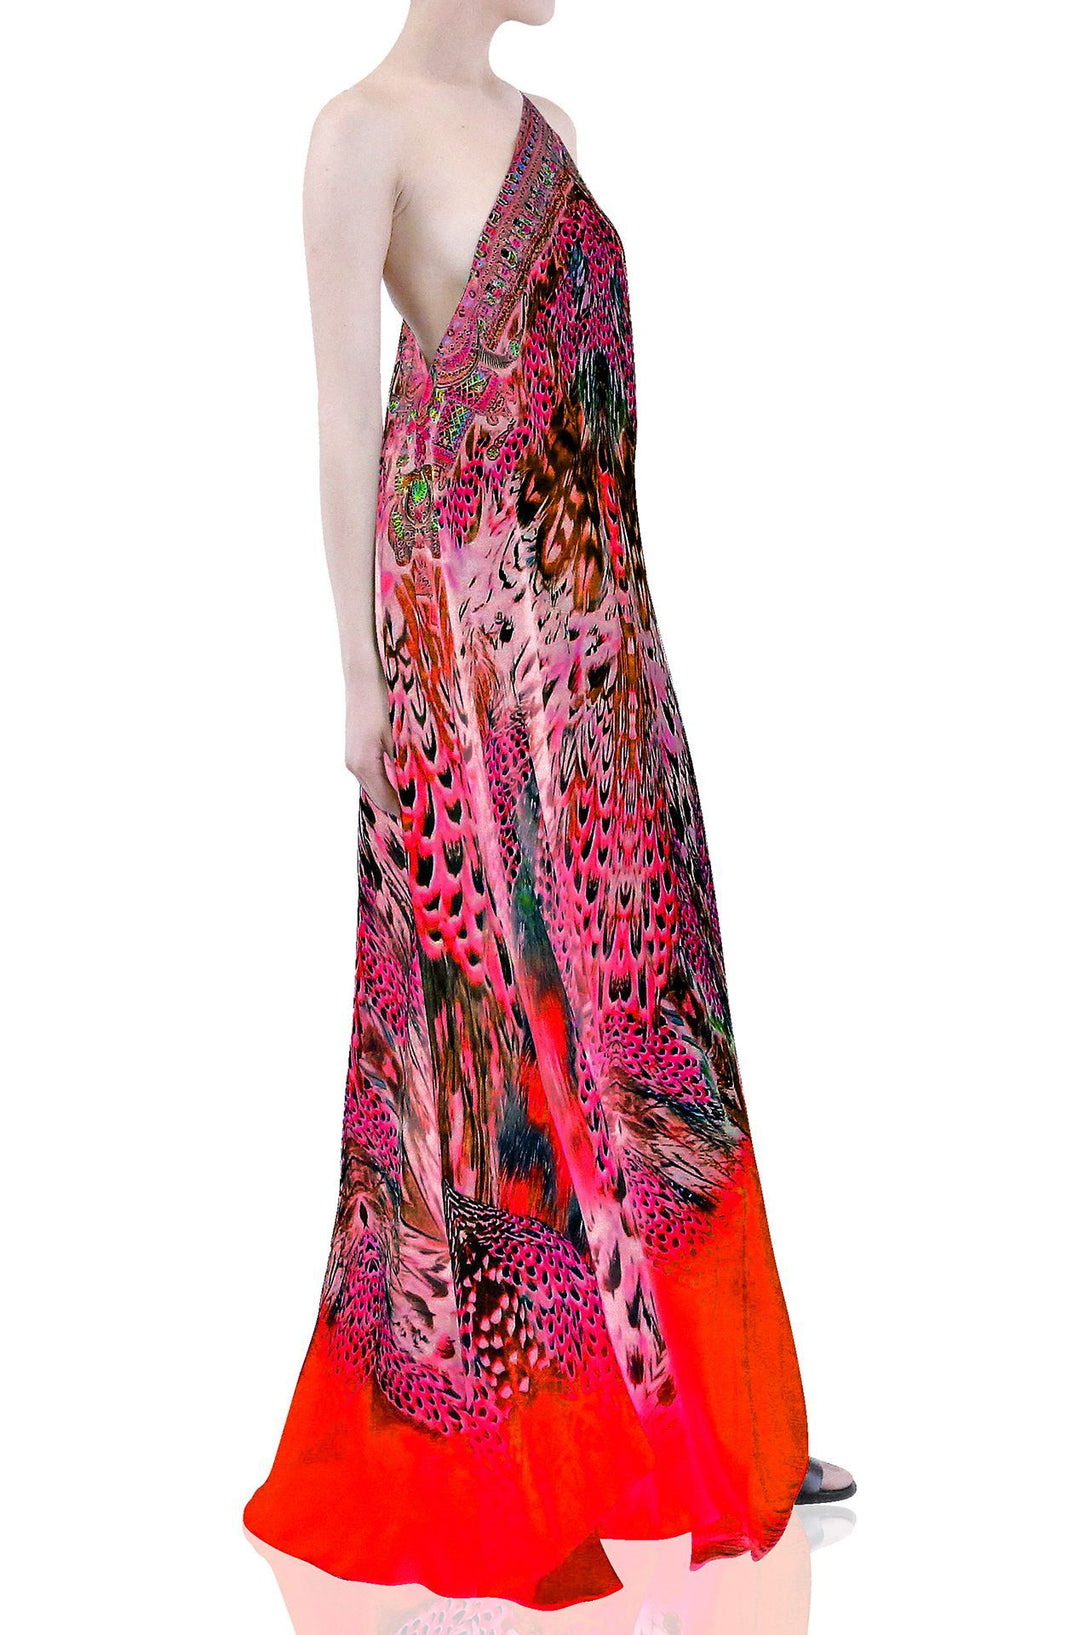  floral pink dress, formal dresses for women, Shahida Parides, plunging neckline cocktail dress,